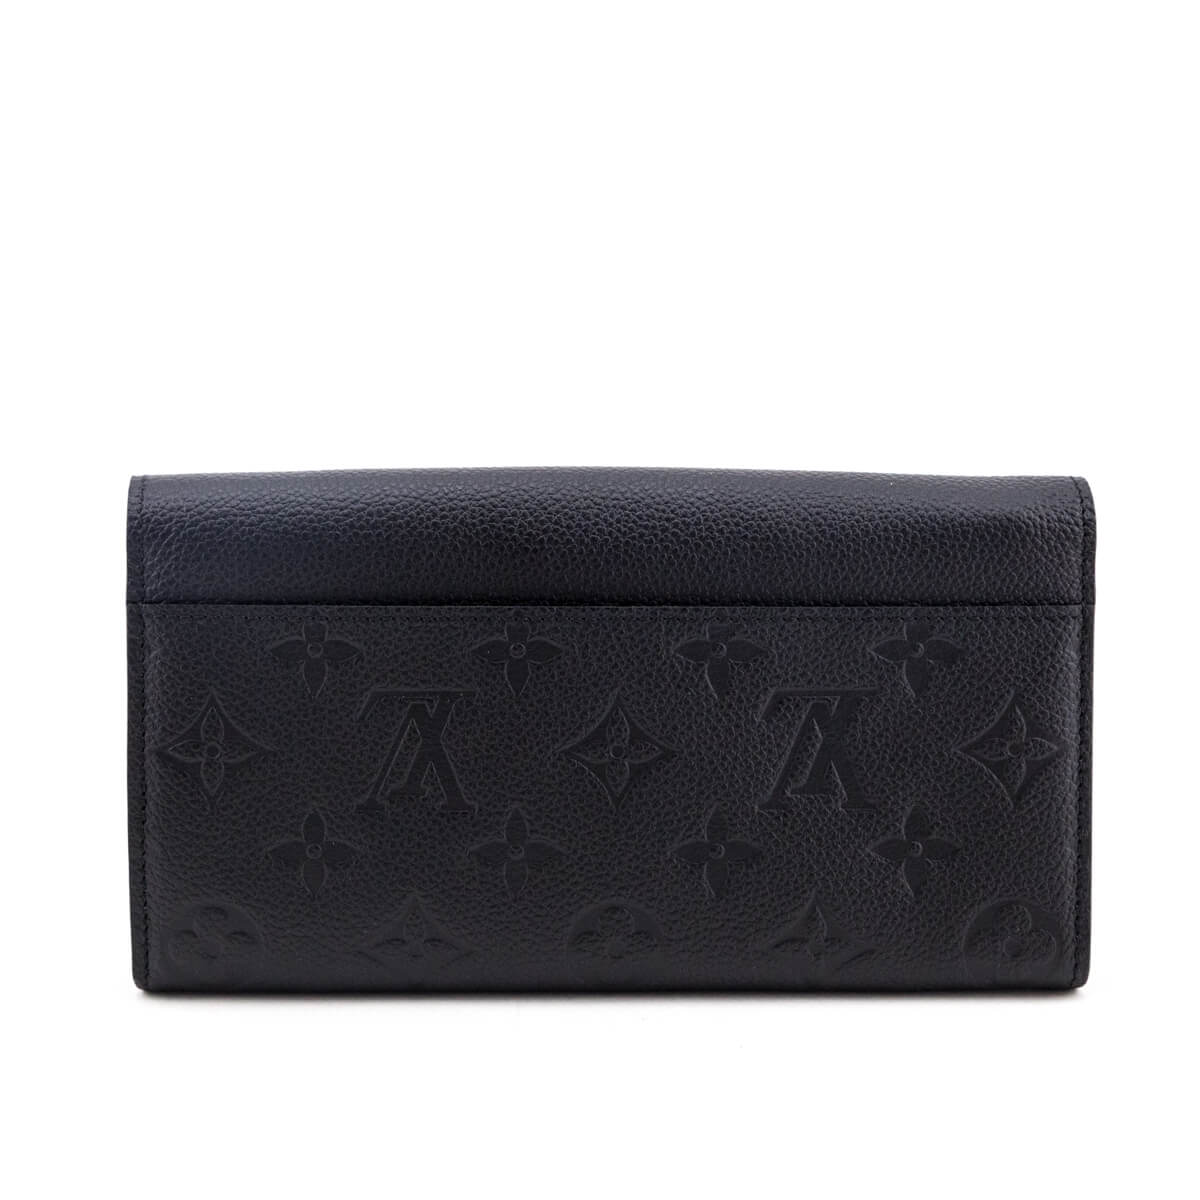 Buy Pre-owned & Brand new Luxury Black Monogram Wallet Online